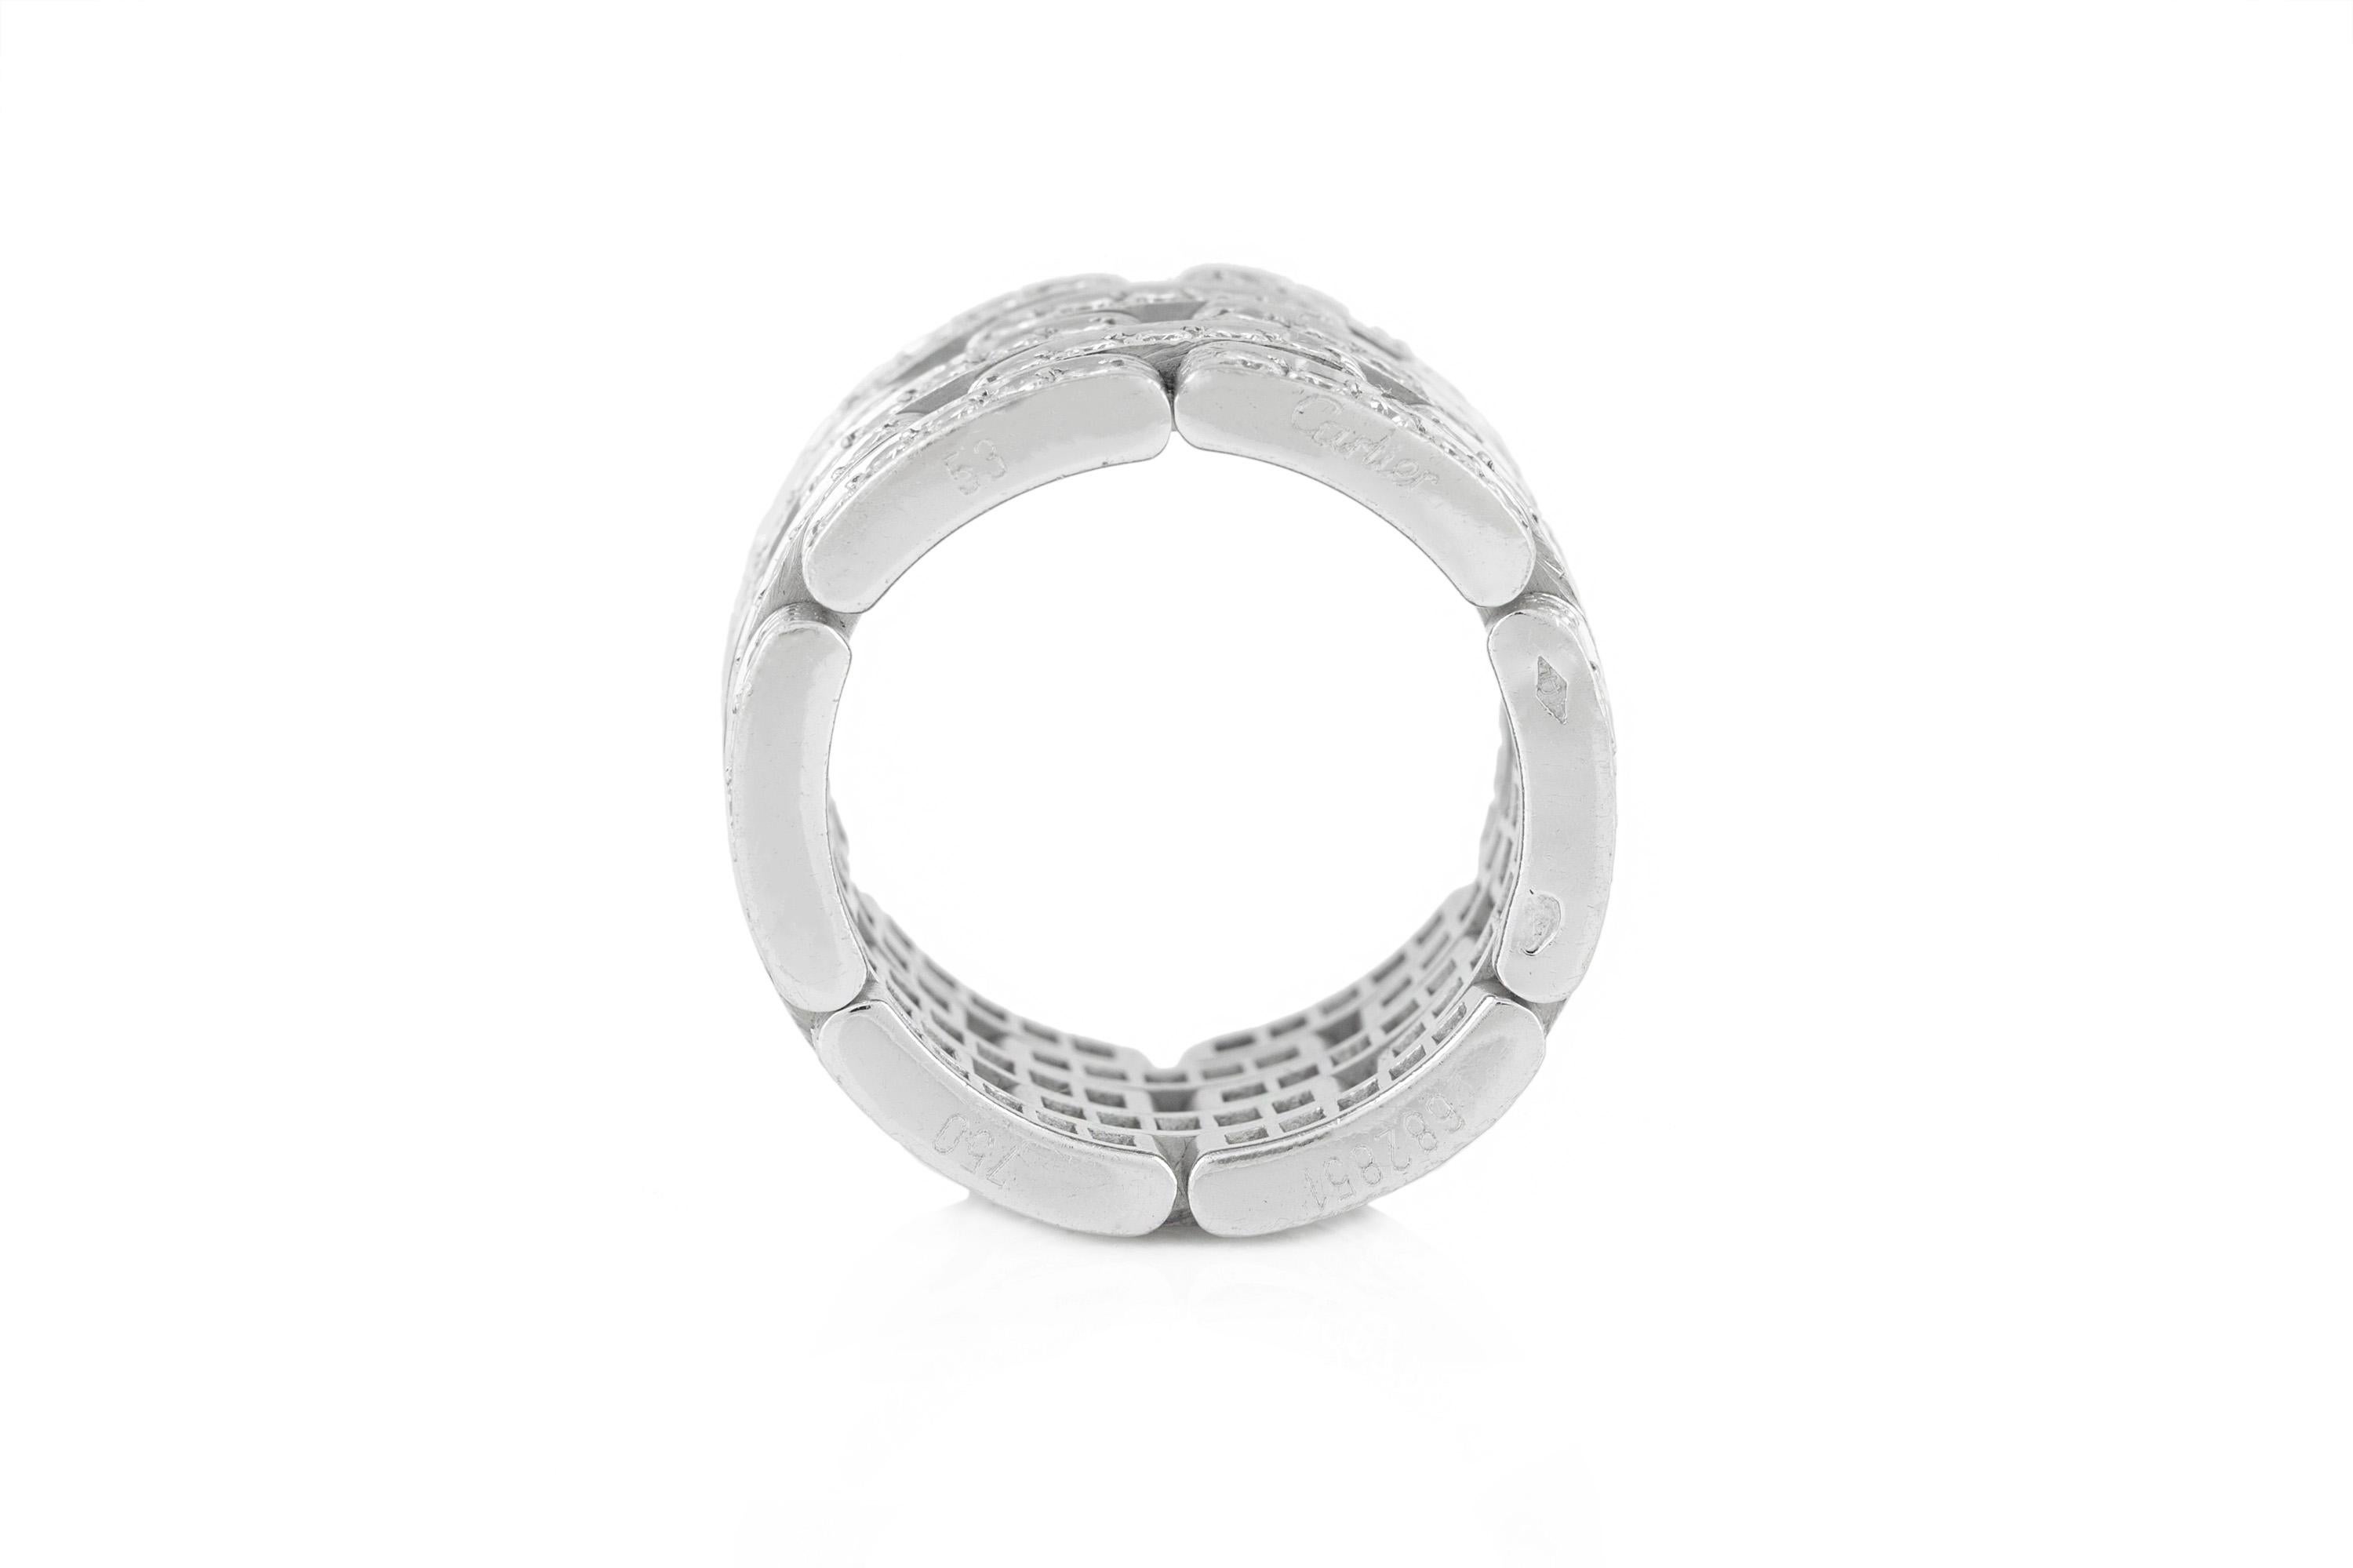 Maillon Panthere Ring aus 18 Karat Weißgold mit 5 Reihen von Diamanten im Brillantschliff. Größe 53. Signiert und nummeriert von Cartier.